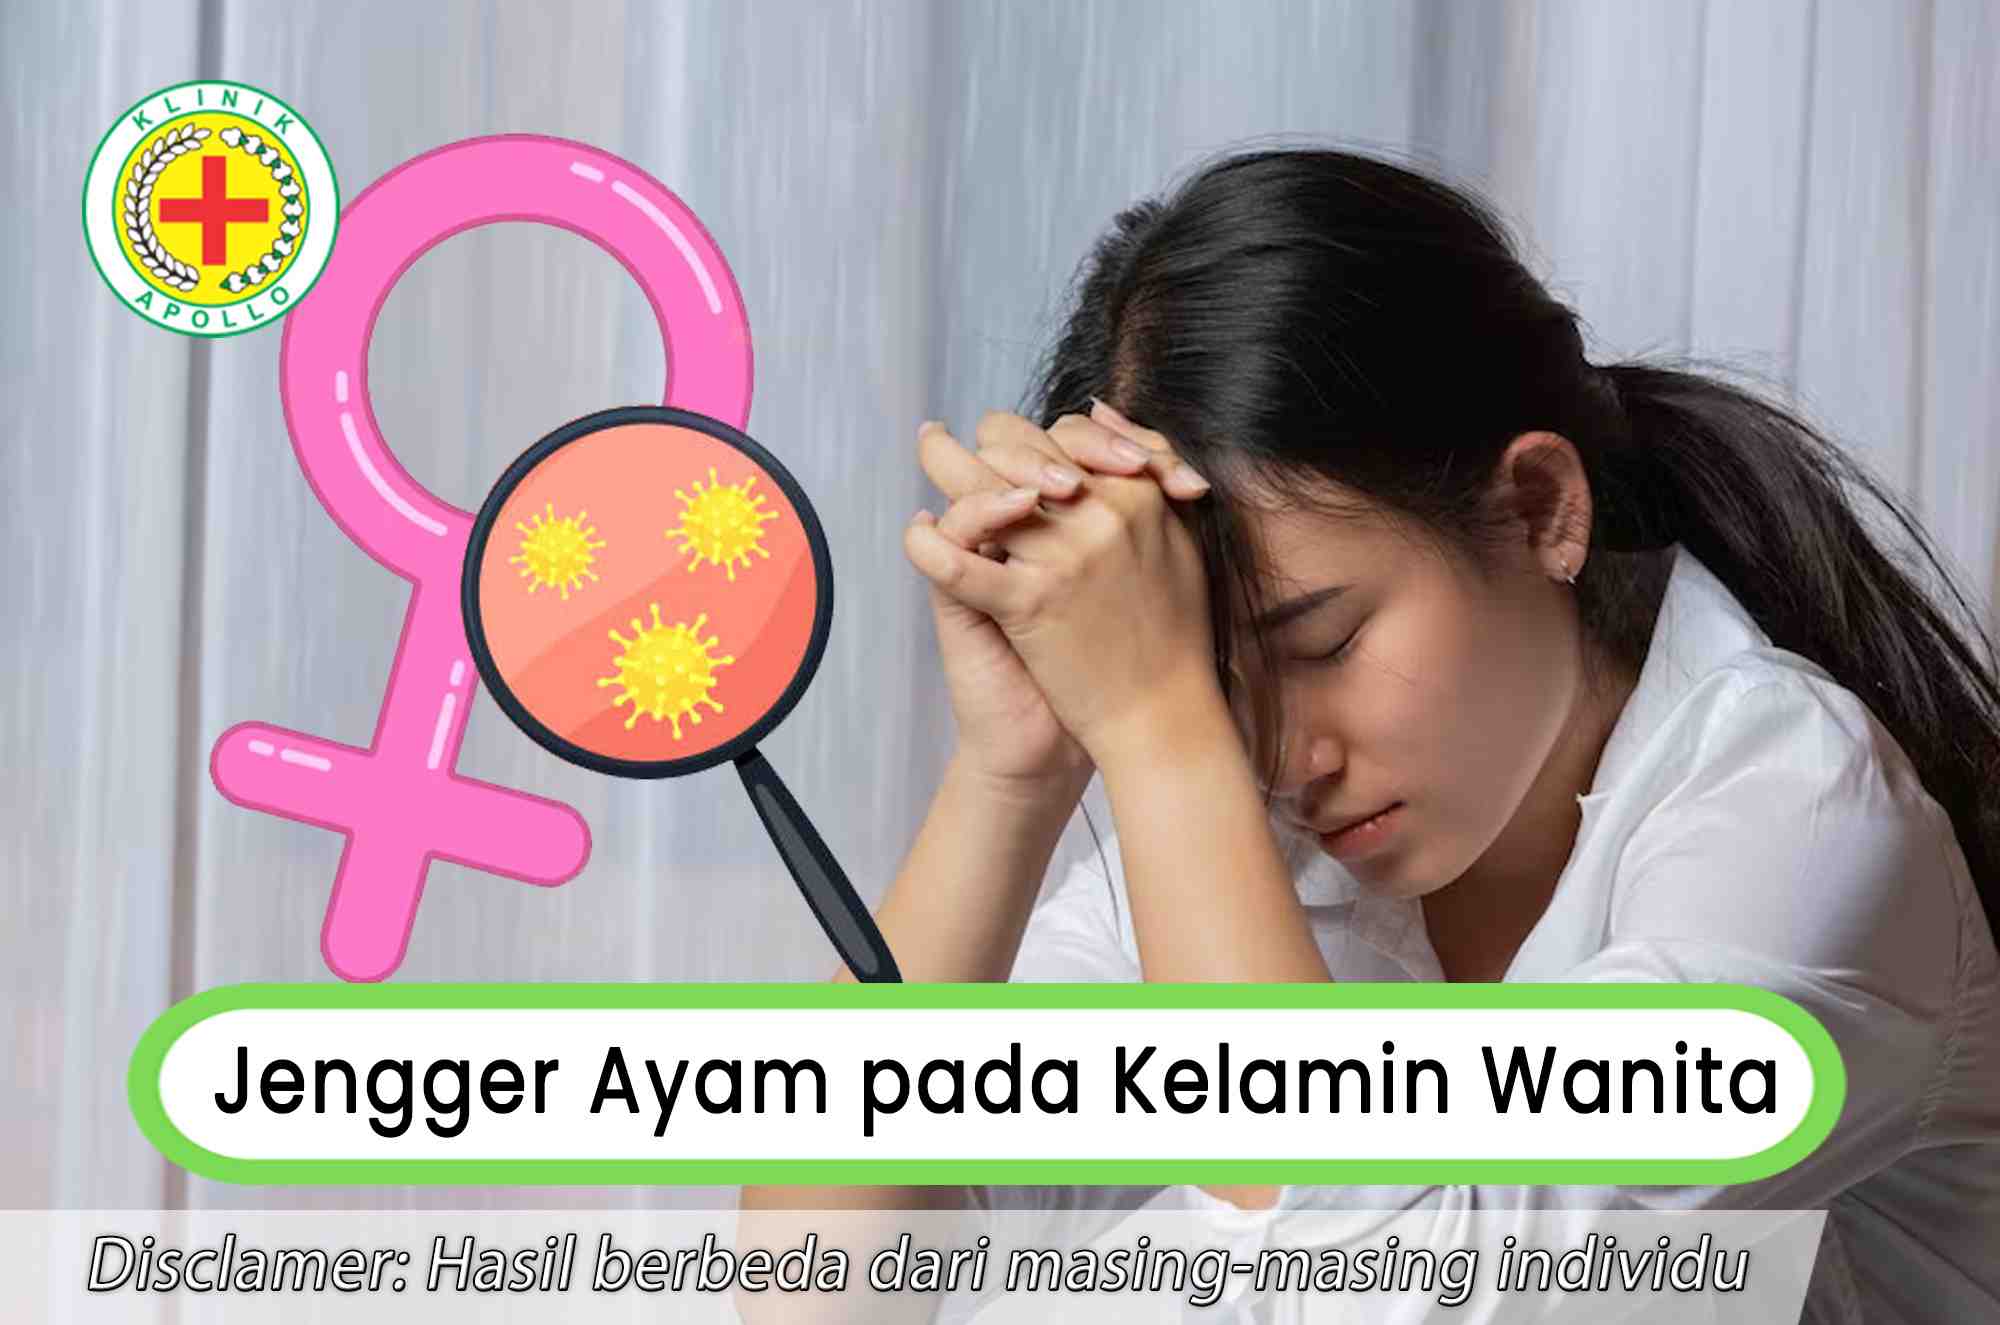 Jika Anda mengalami jengger ayam pada kelamin wanita, hubungi dokter ahli di Klinik Apollo Jakarta.